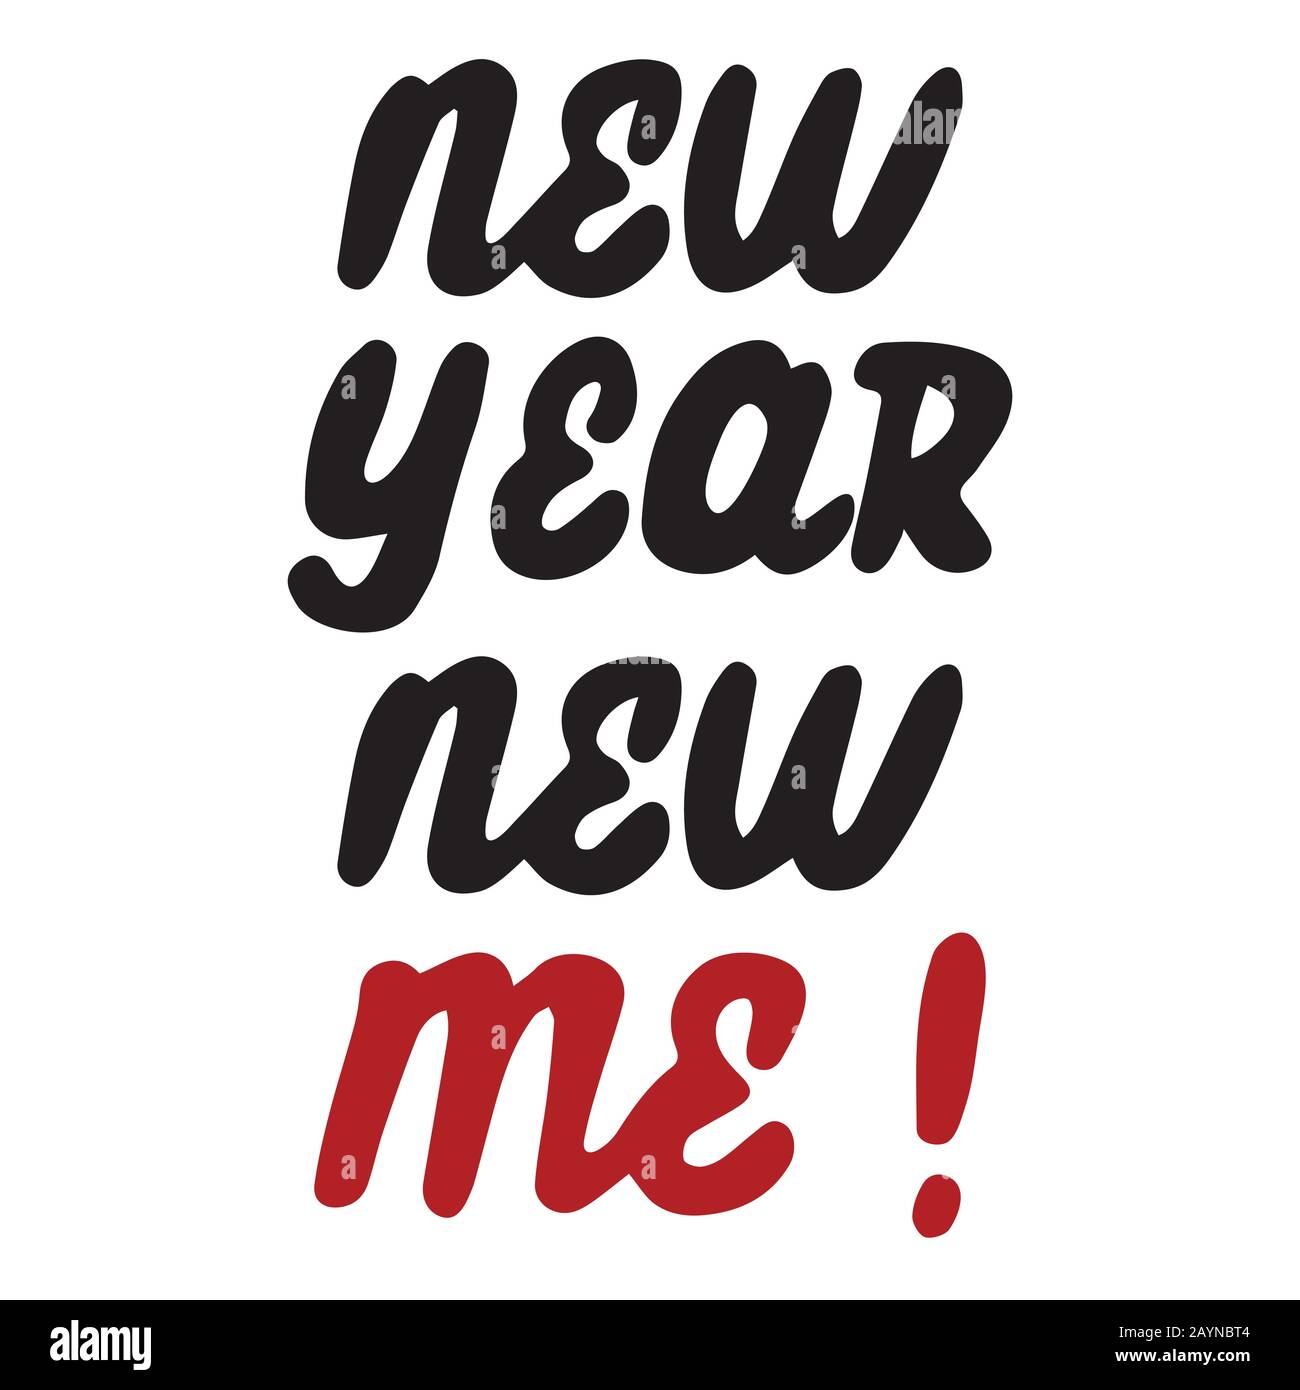 Neues Jahr Neues handschriftliches Zitat von mir. Motivierender und inspirierender Slogan. Kreative Typografie für Ihr Design. Schwarz, rot und weiß. Vektor. Stock Vektor